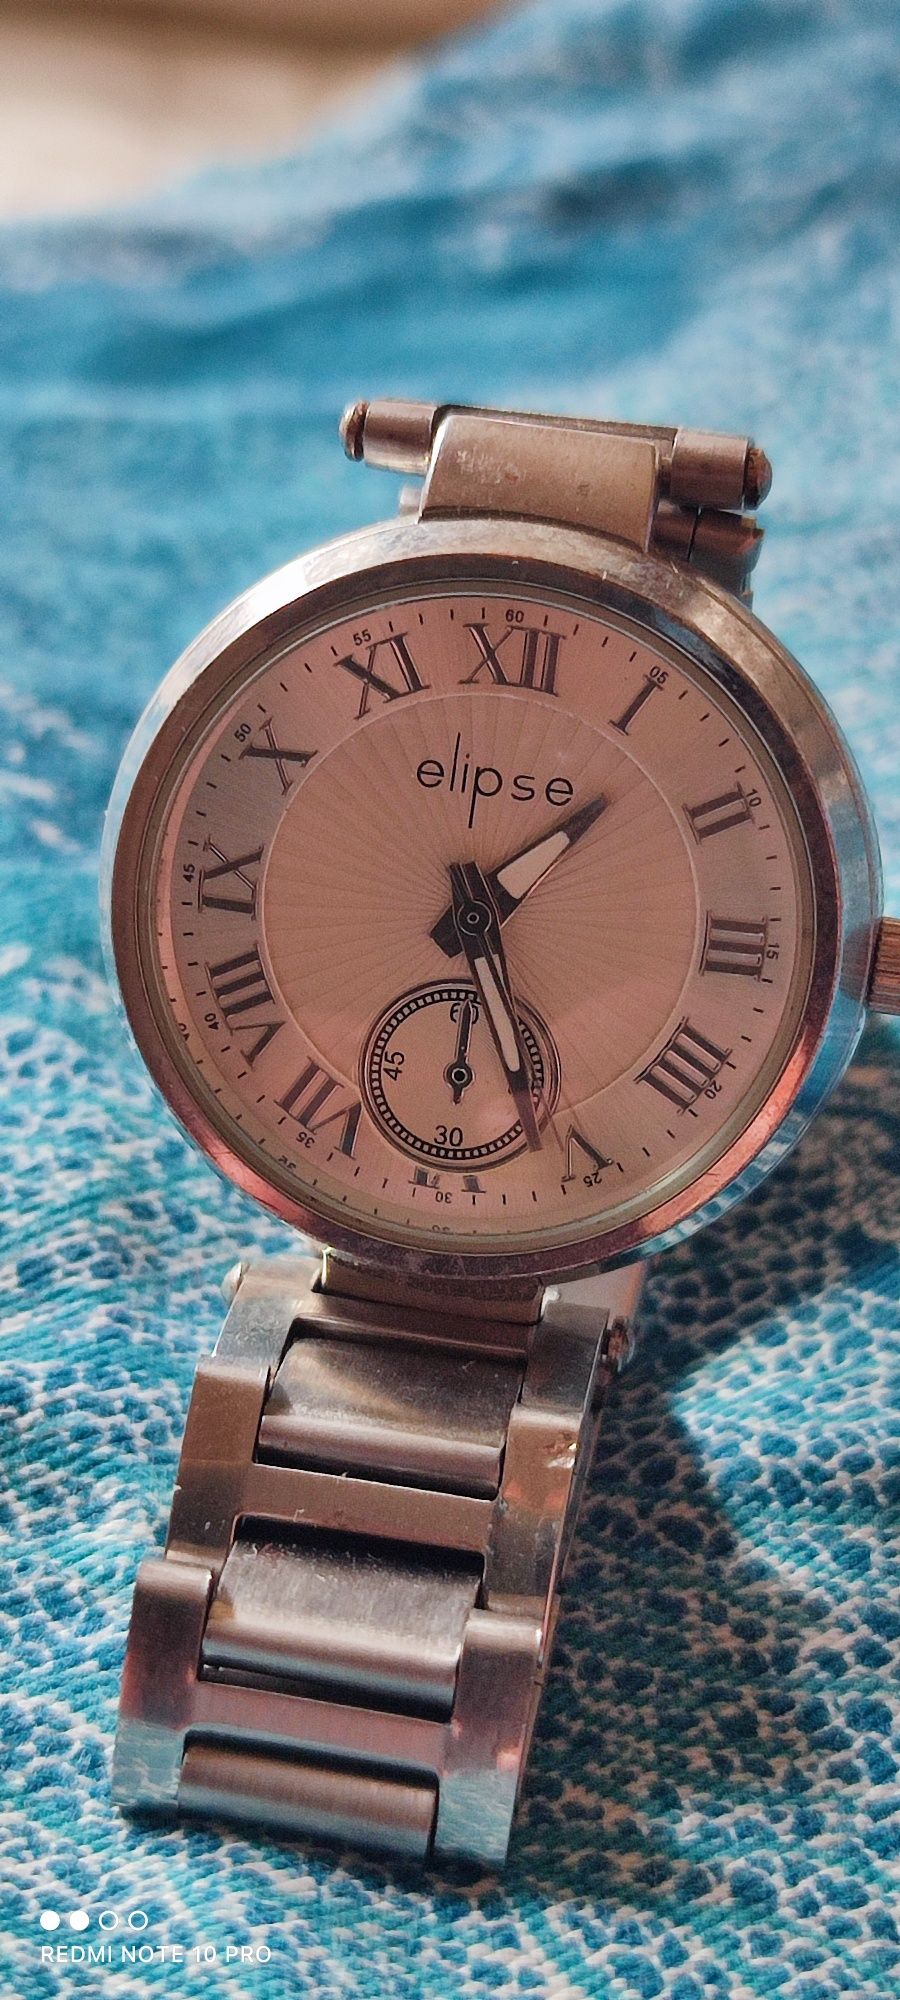 Vendo Relógio de Senhora Elipse a funcionar sem qualquer problema